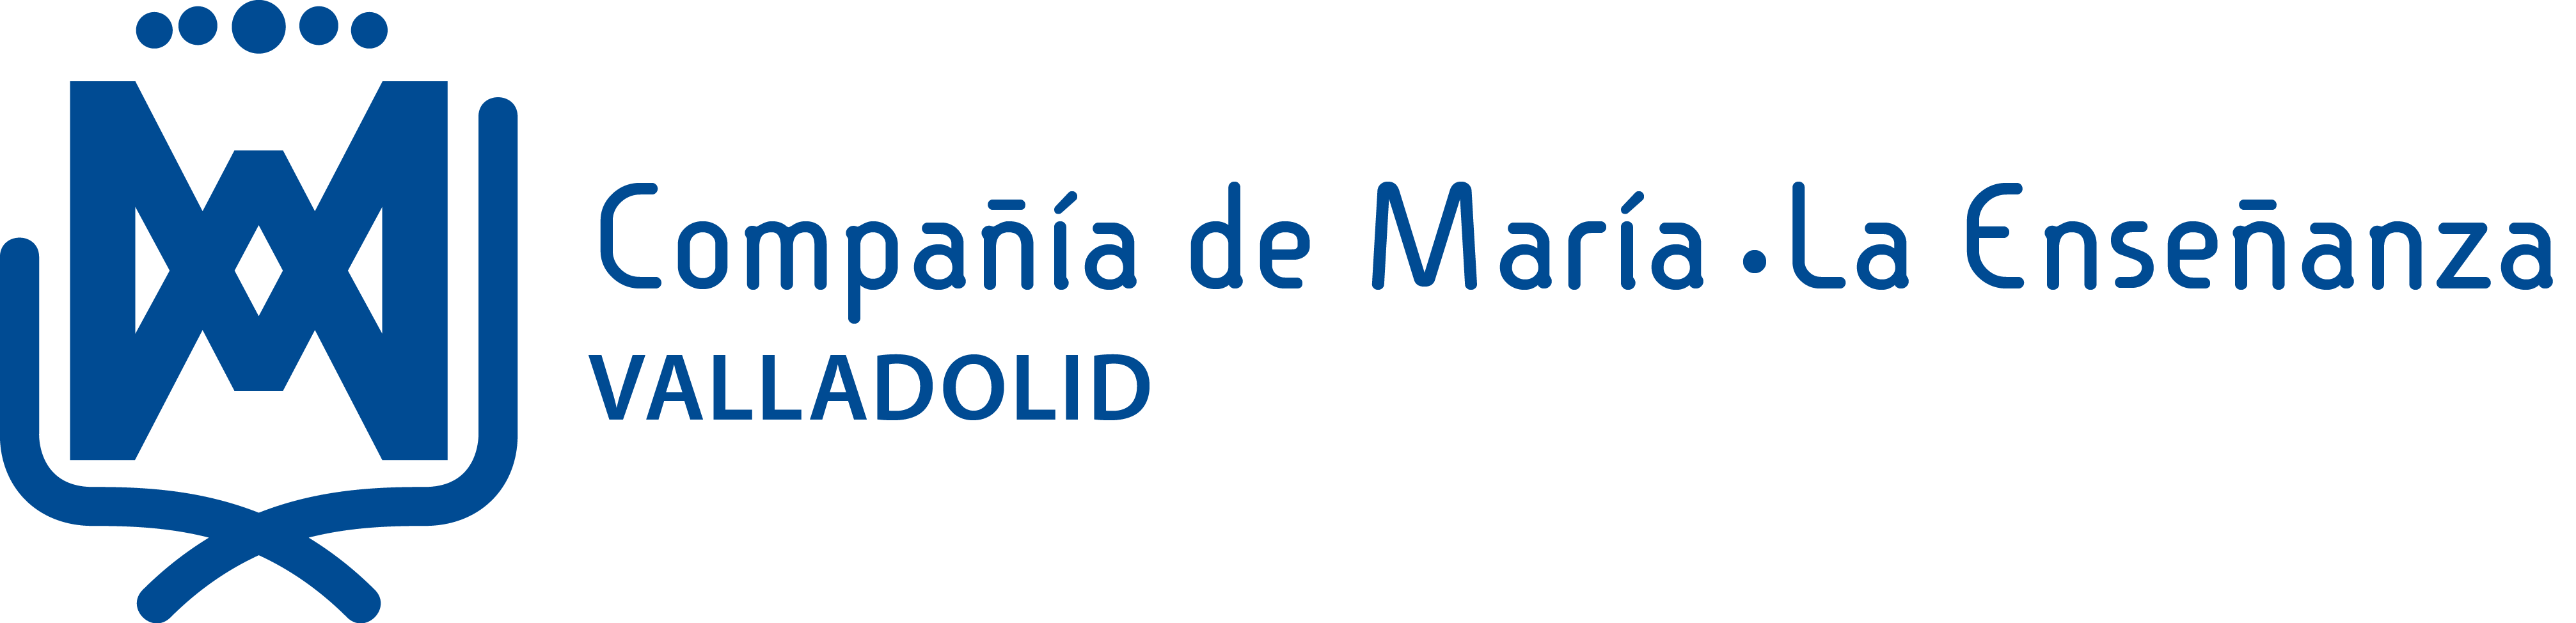 Compañía de María Valladolid La Enseñanza